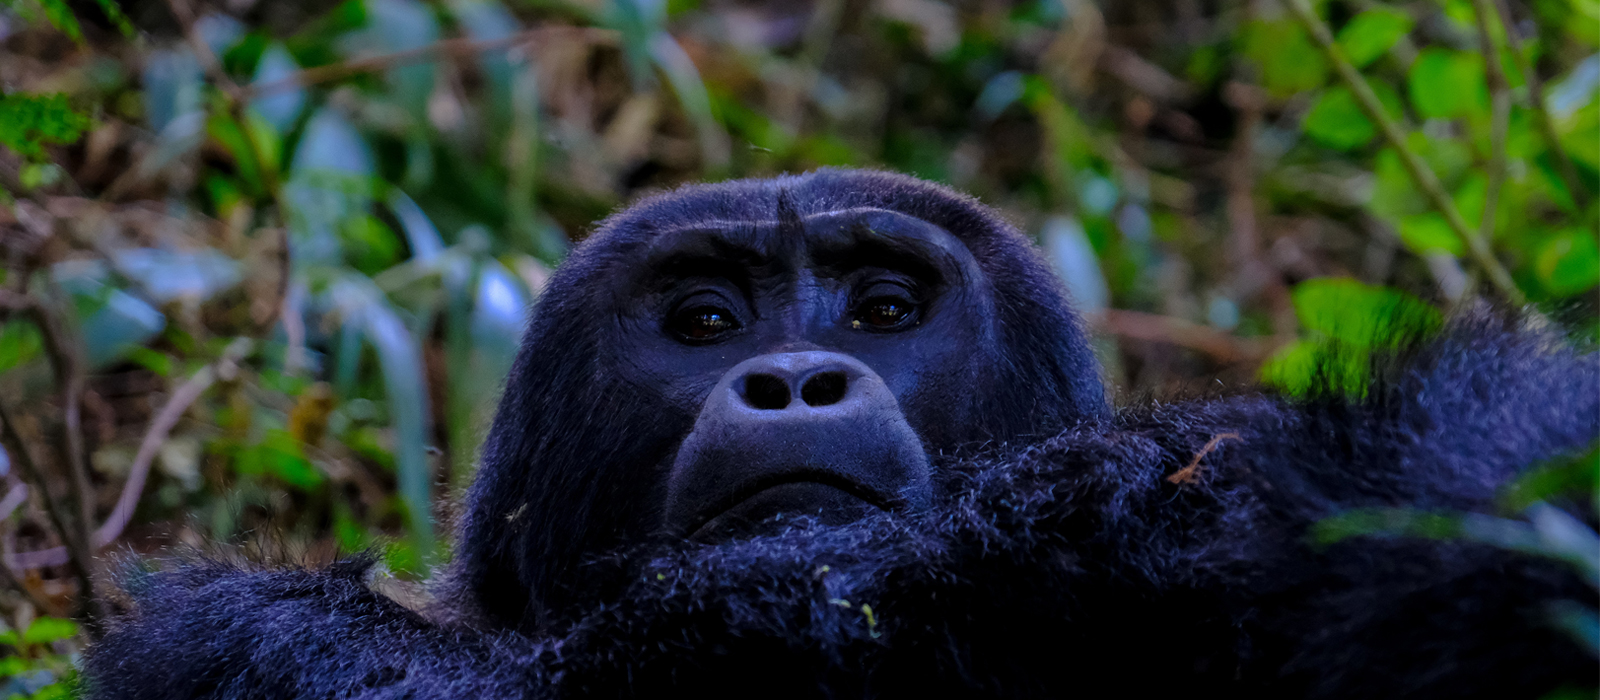 Book gorilla Safaris